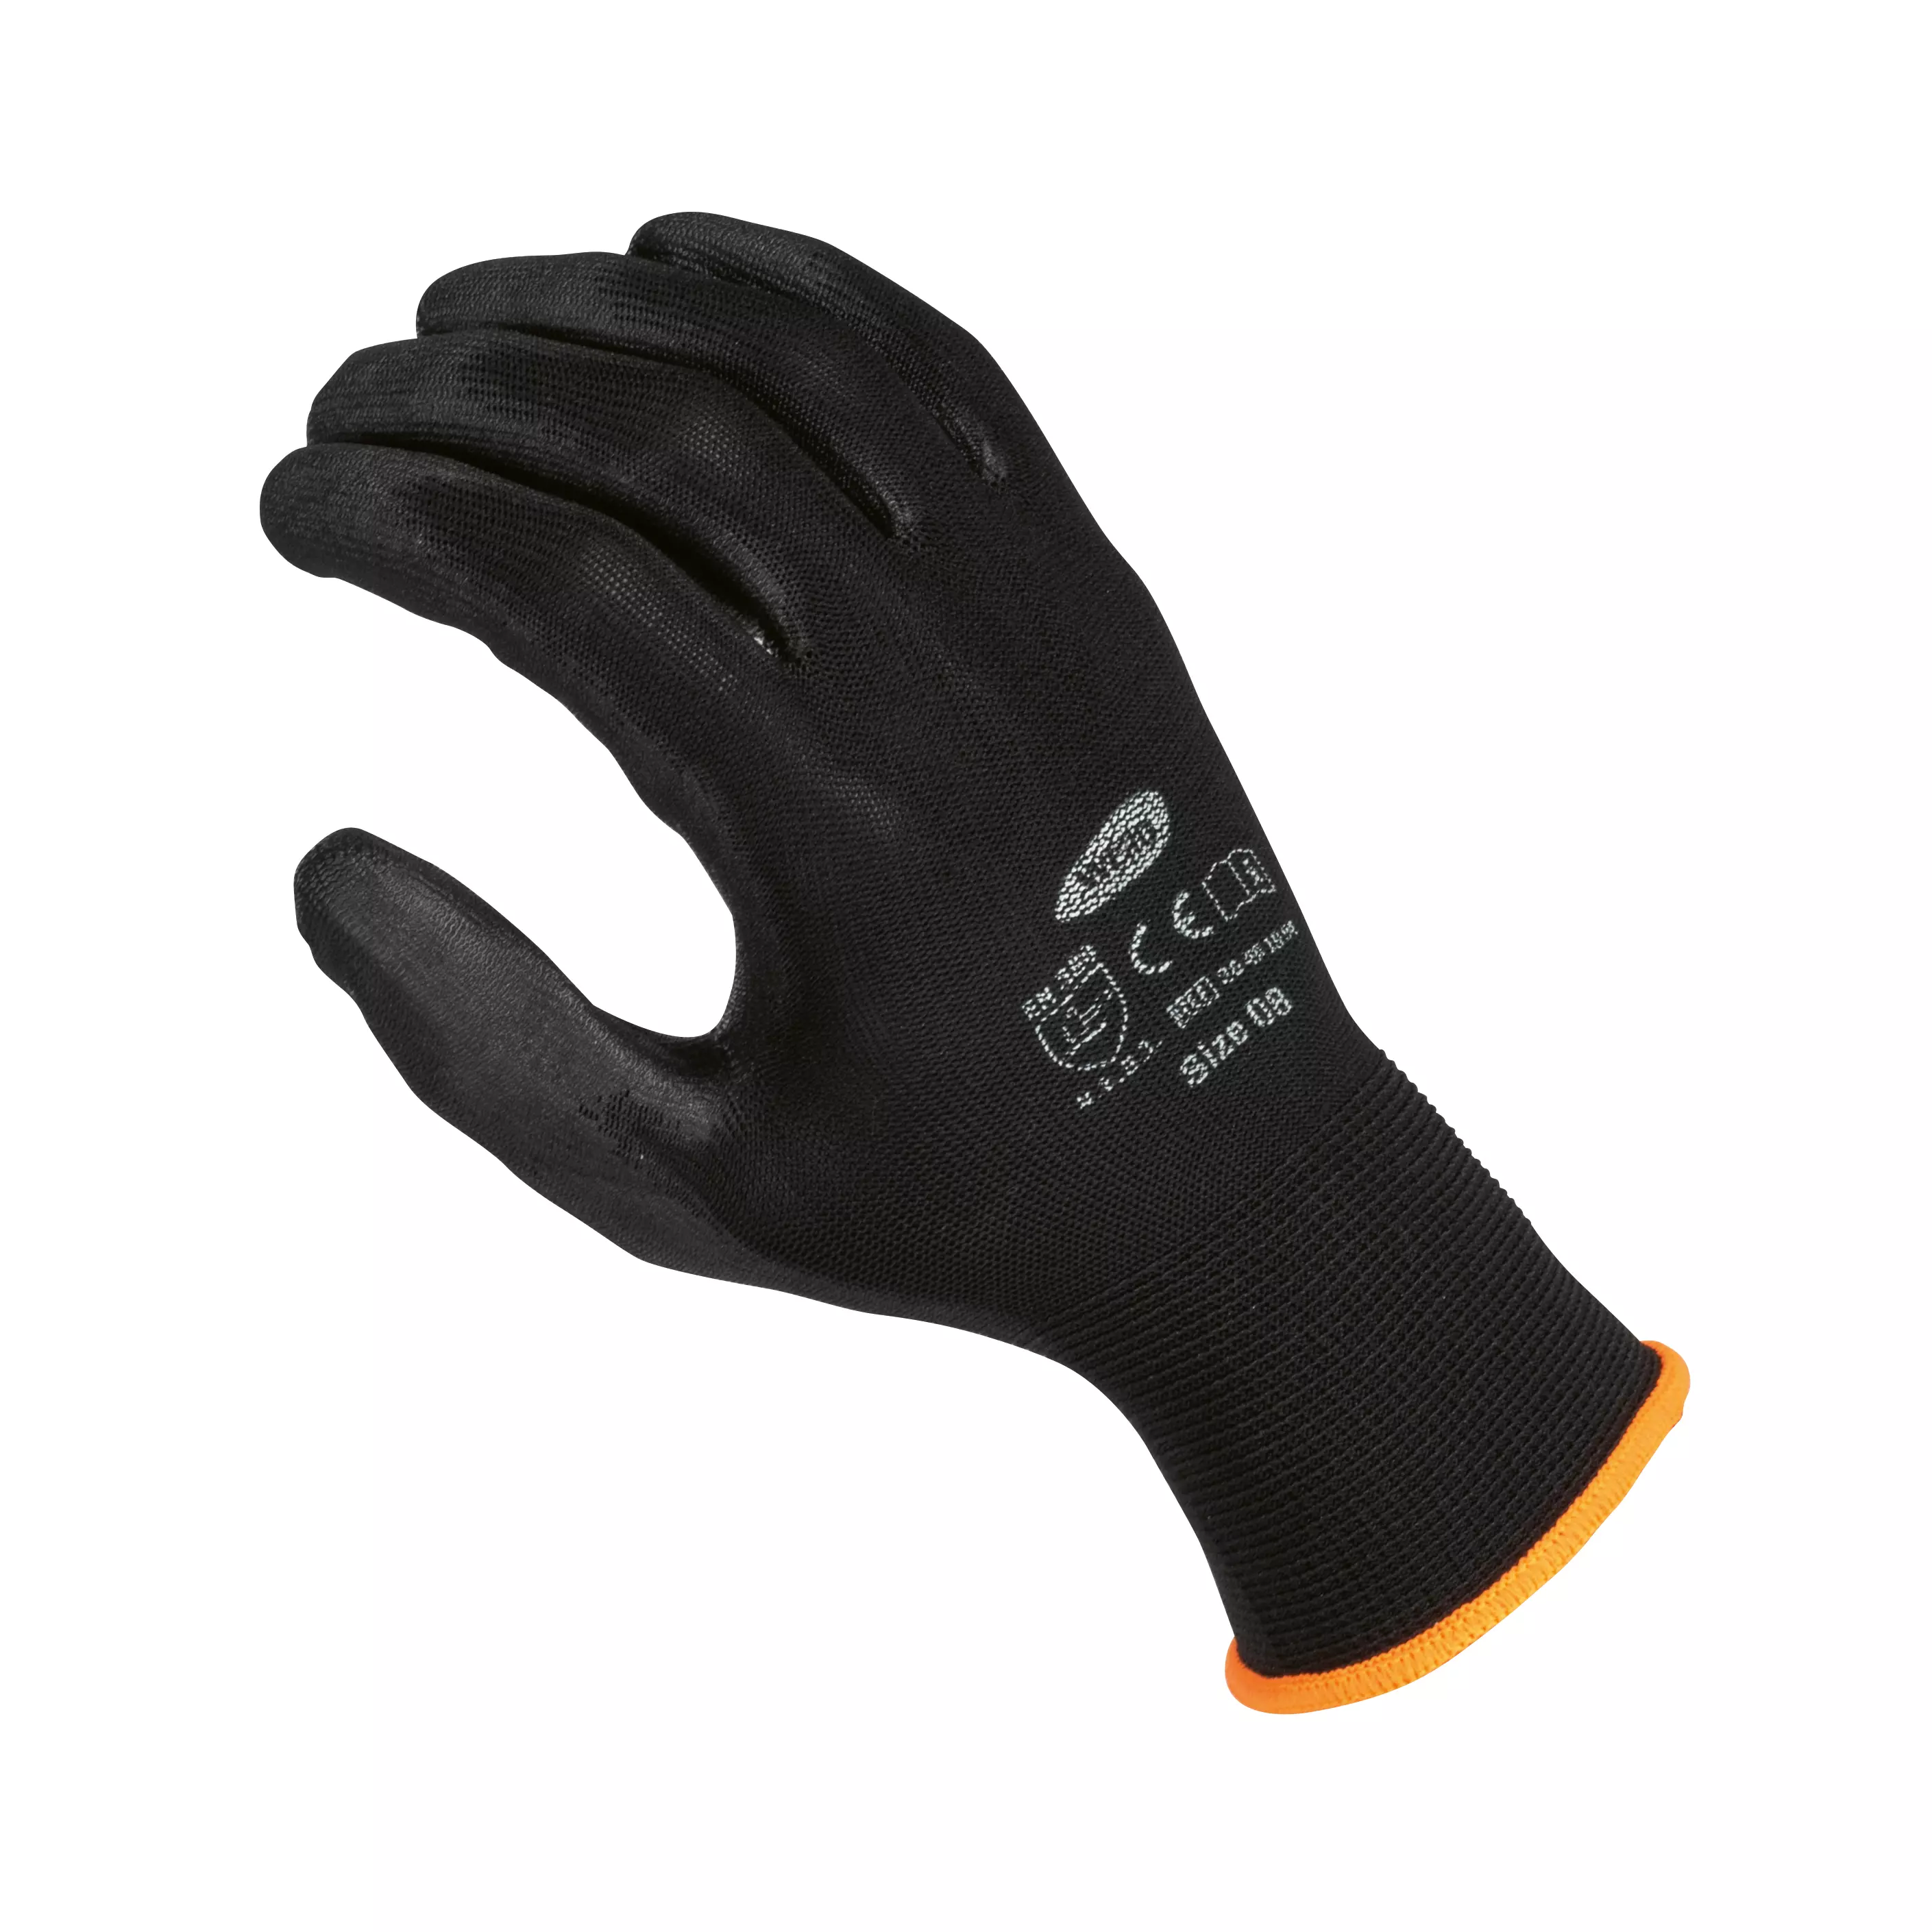 Fine knit glove WERO Allrounder, 12 pairs - Black, 7